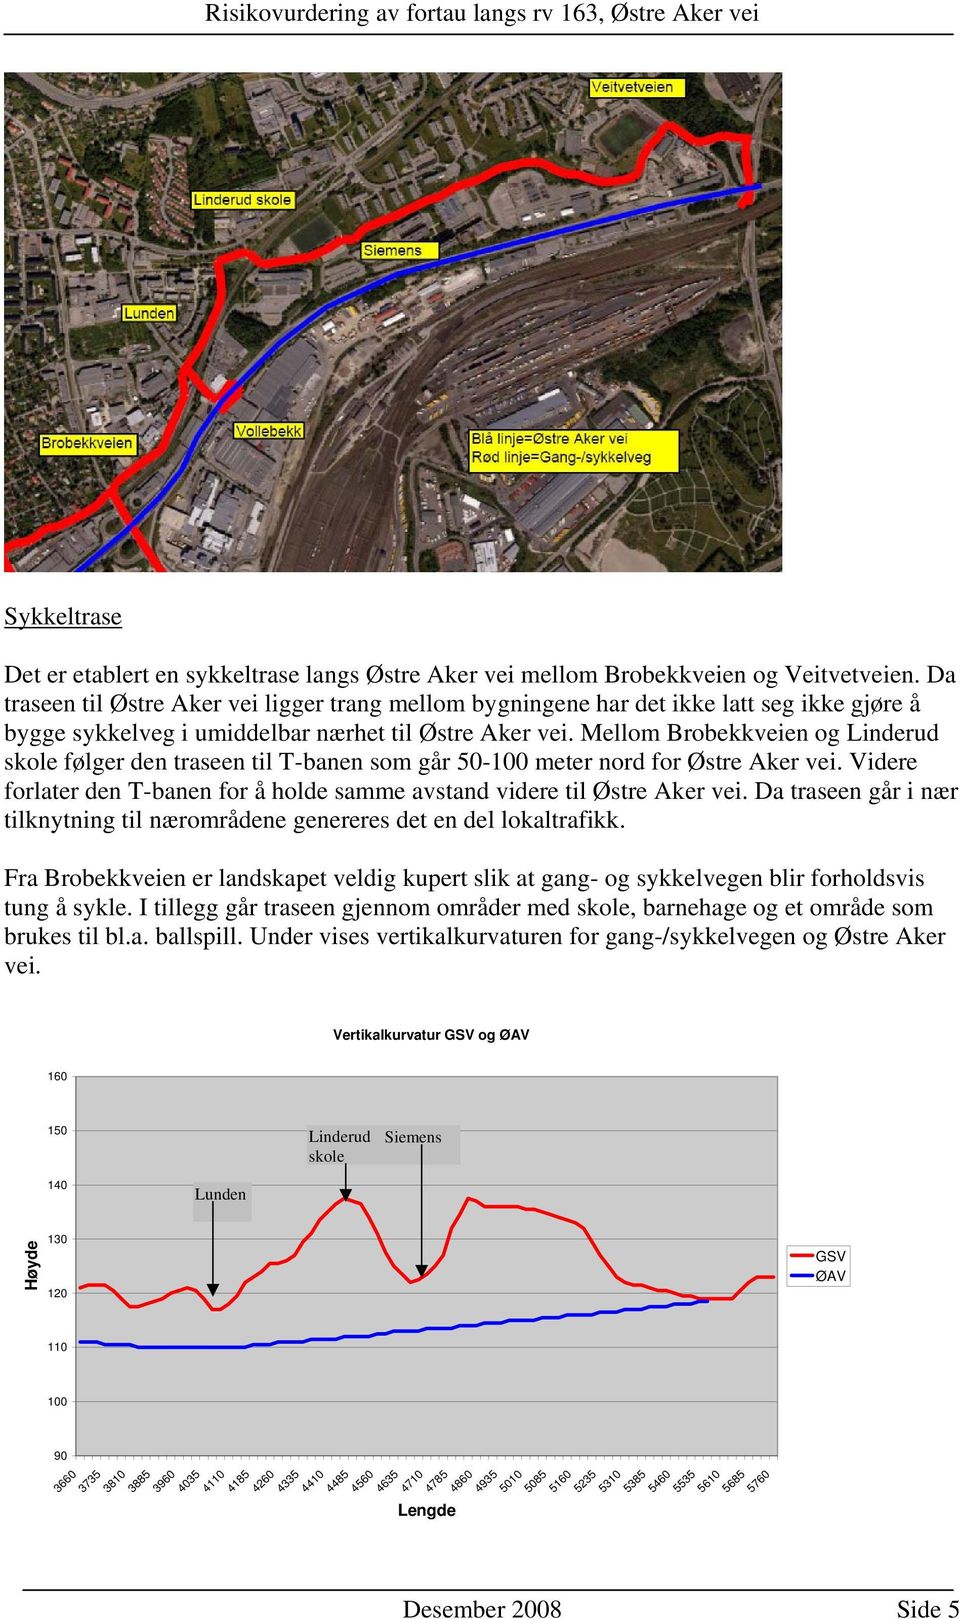 Mellom Brobekkveien og Linderud skole følger den traseen til T-banen som går 50-100 meter nord for Østre Aker vei. Videre forlater den T-banen for å holde samme avstand videre til Østre Aker vei.